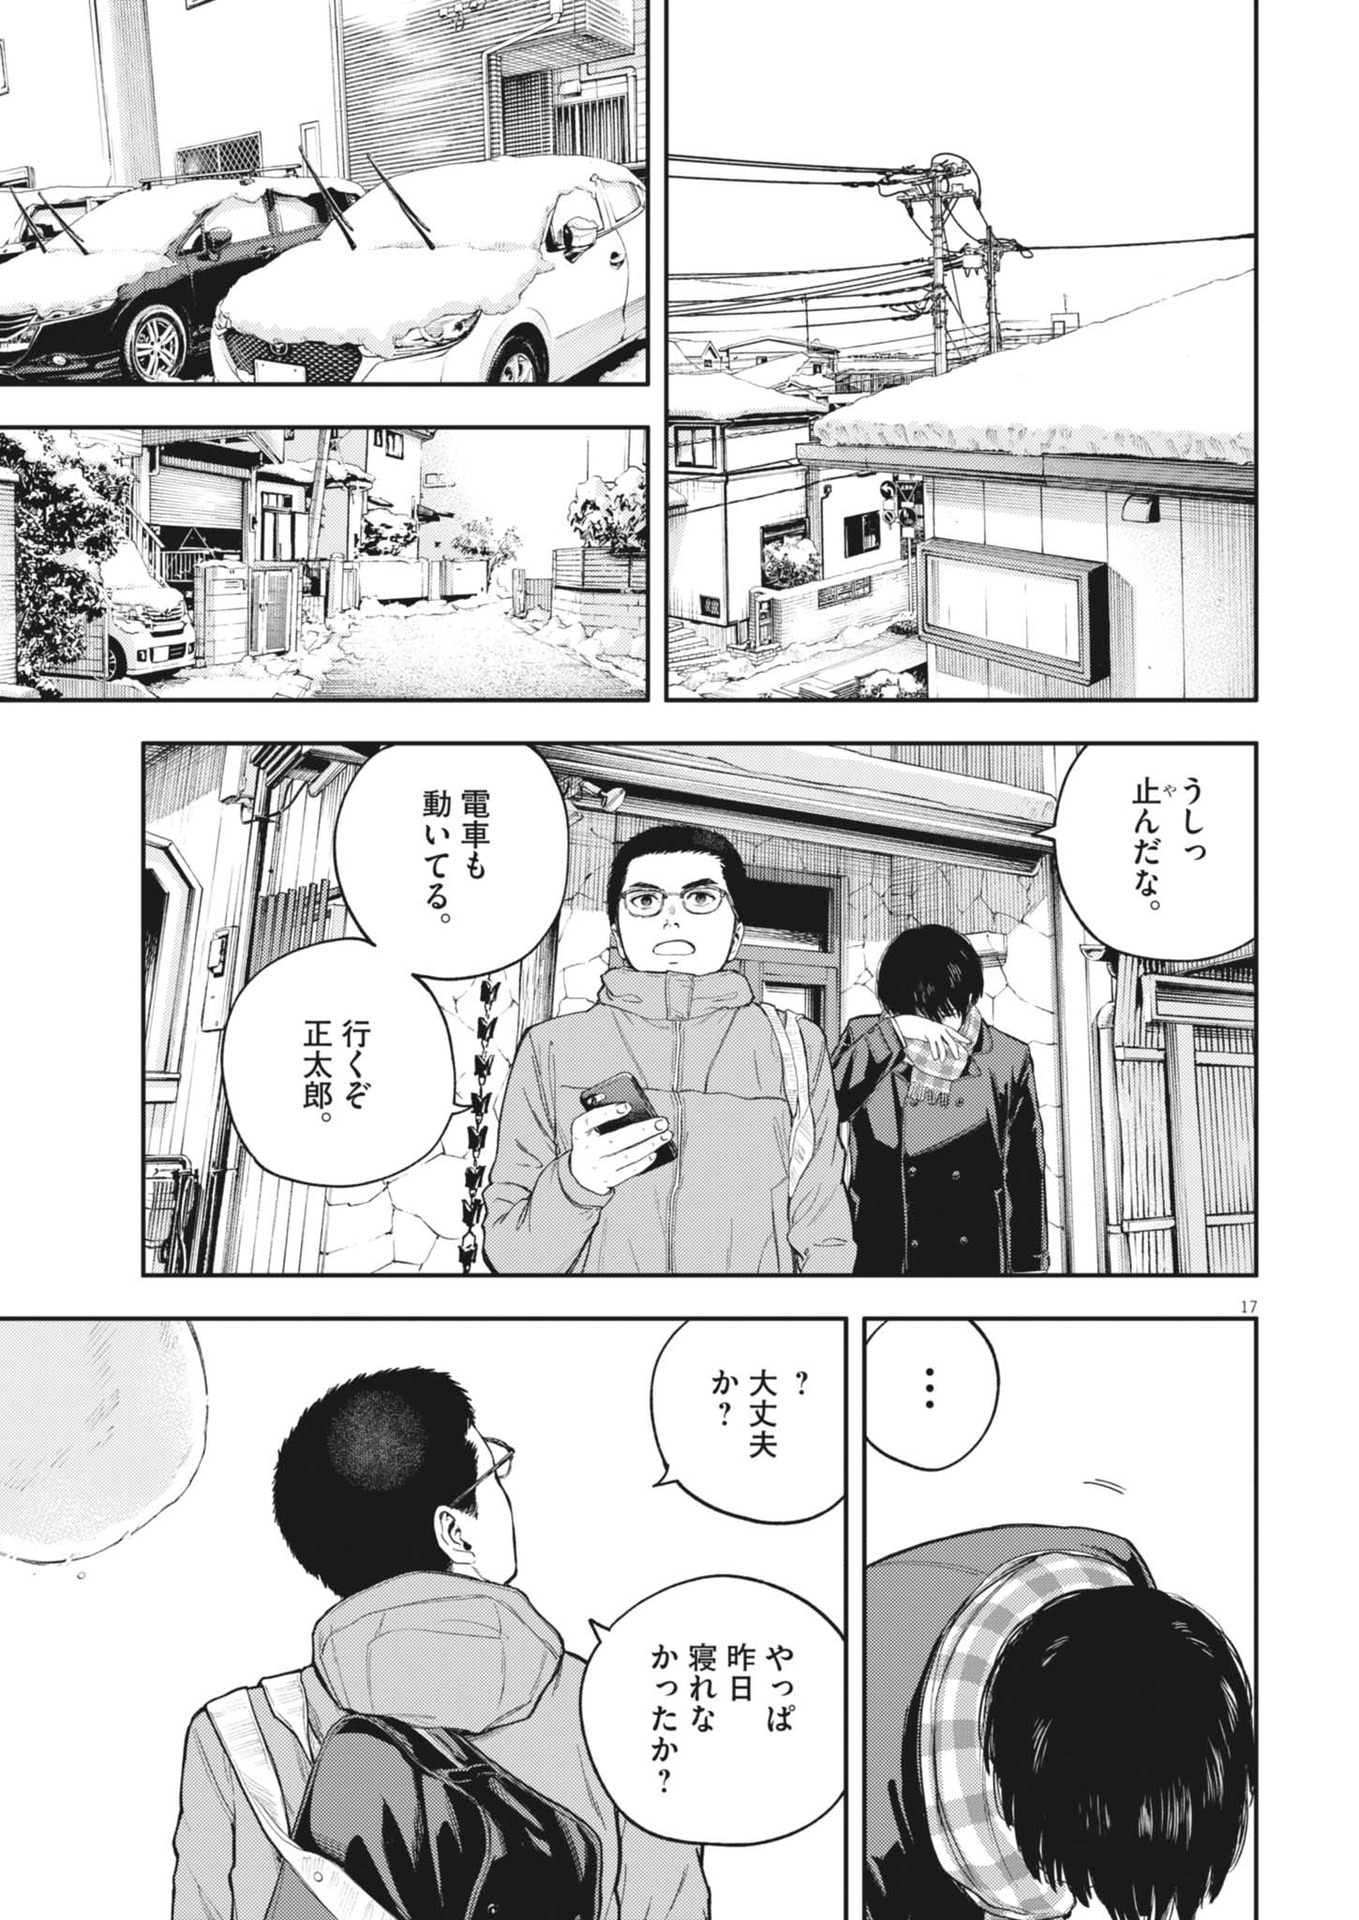 Yumenashi-sensei no Shinroshidou - Chapter 32 - Page 17